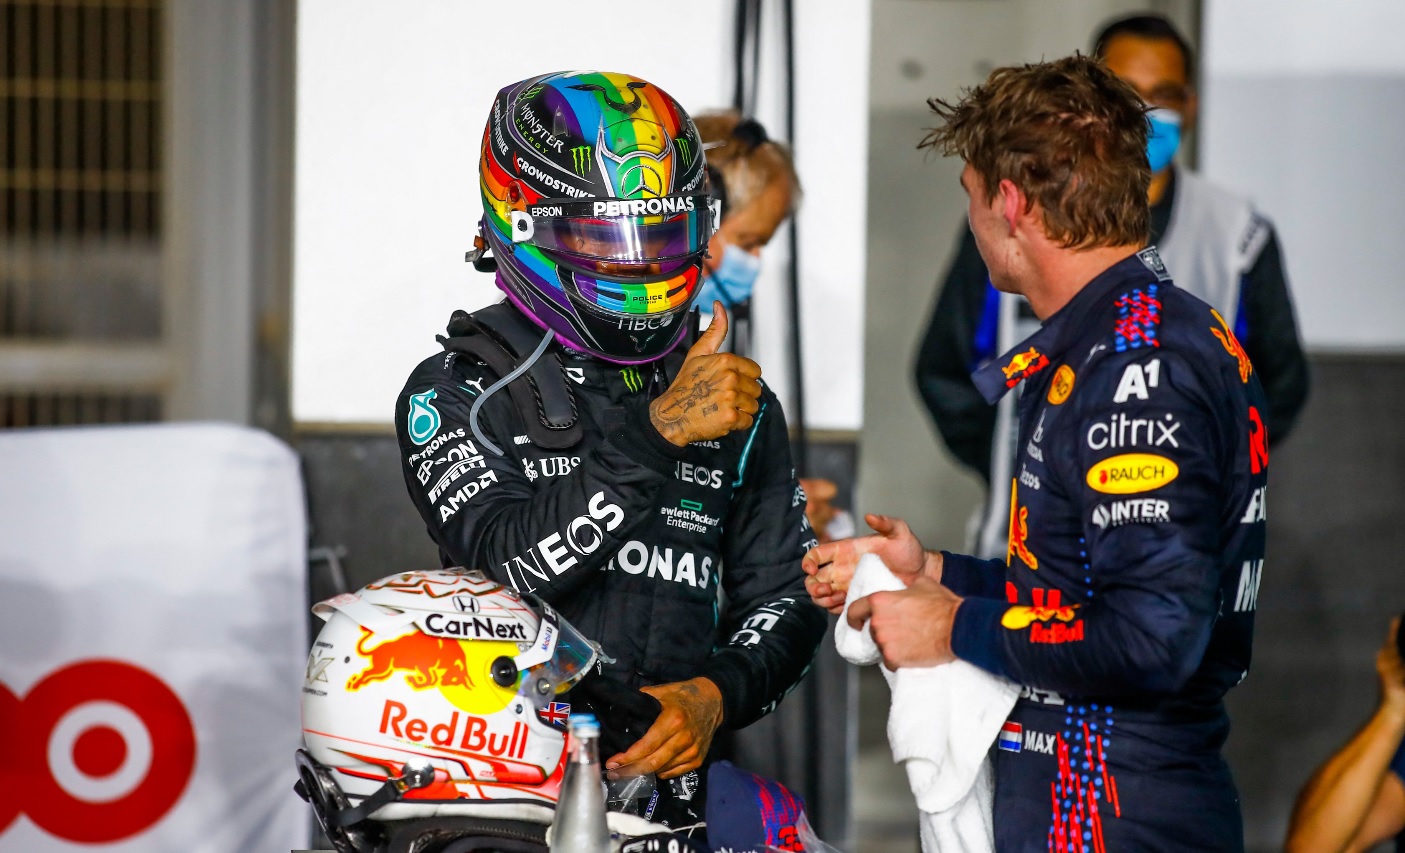 Lewis Hamilton, victorie uriaşă în Qatar. Continuă lupta cu Max Verstappen pentru titlul mondial. Podium incredibil pentru Alonso, la 40 de ani